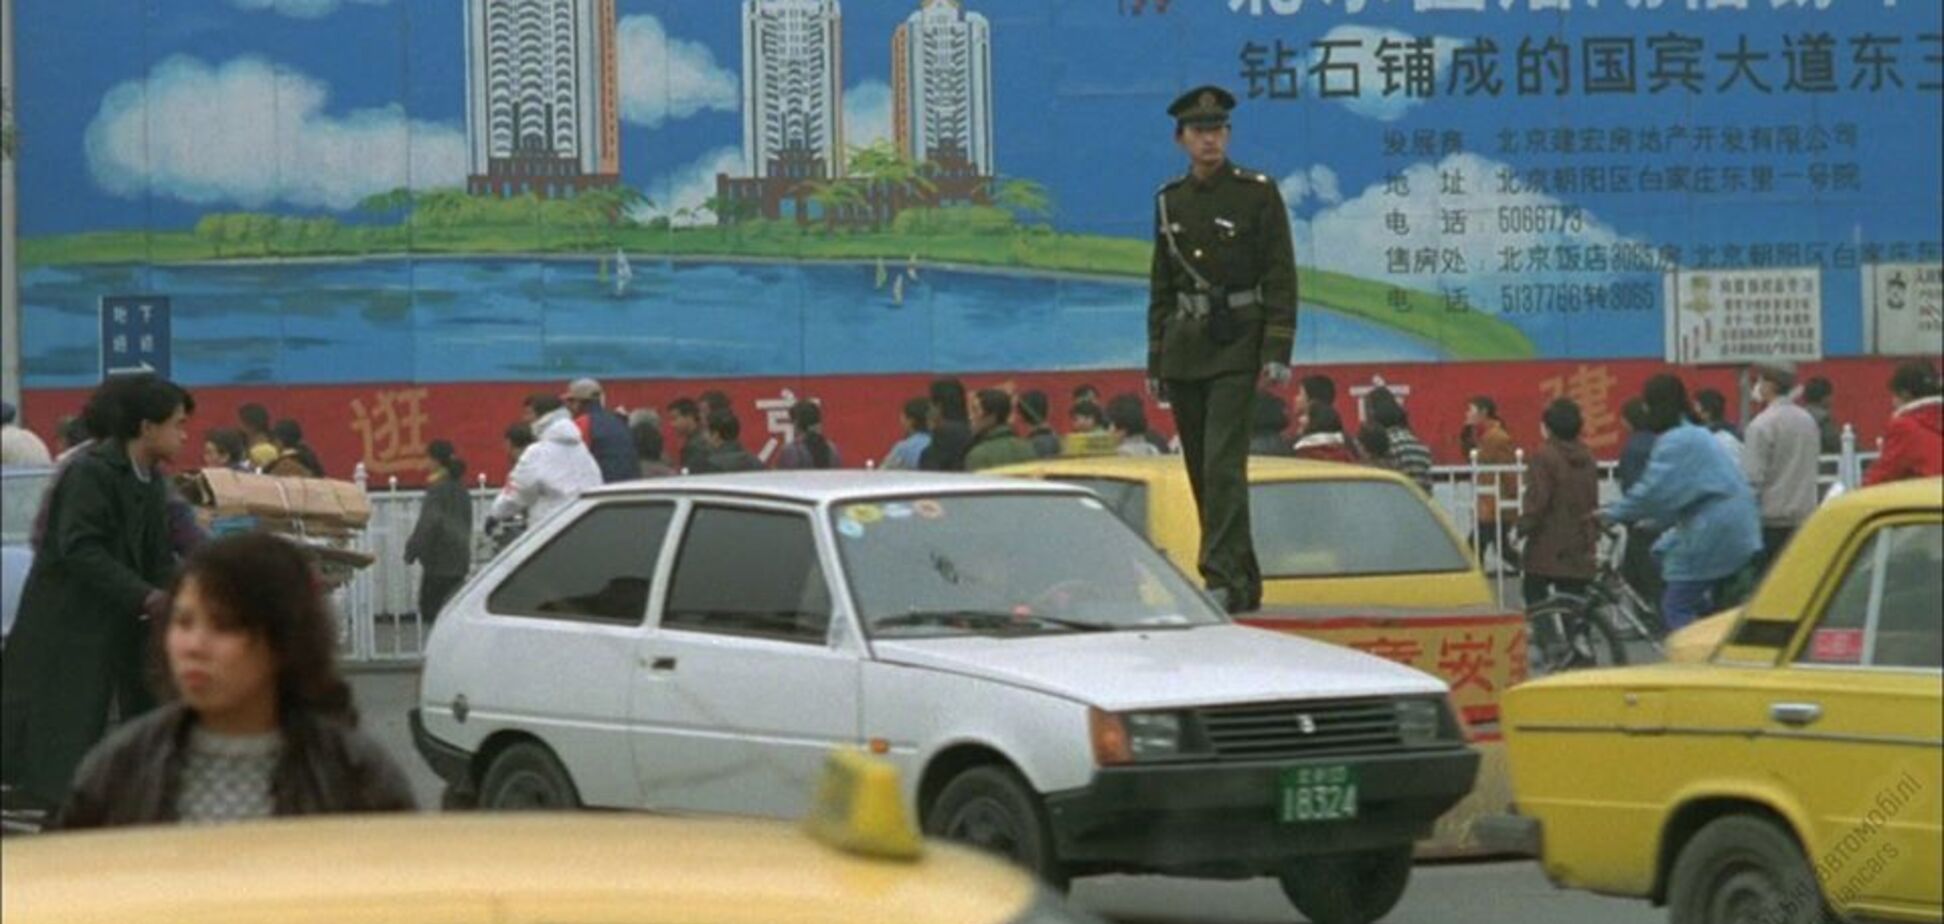 ЗАЗ Таврія на зйомках фільму в Китаї: опубліковано унікальний кадр